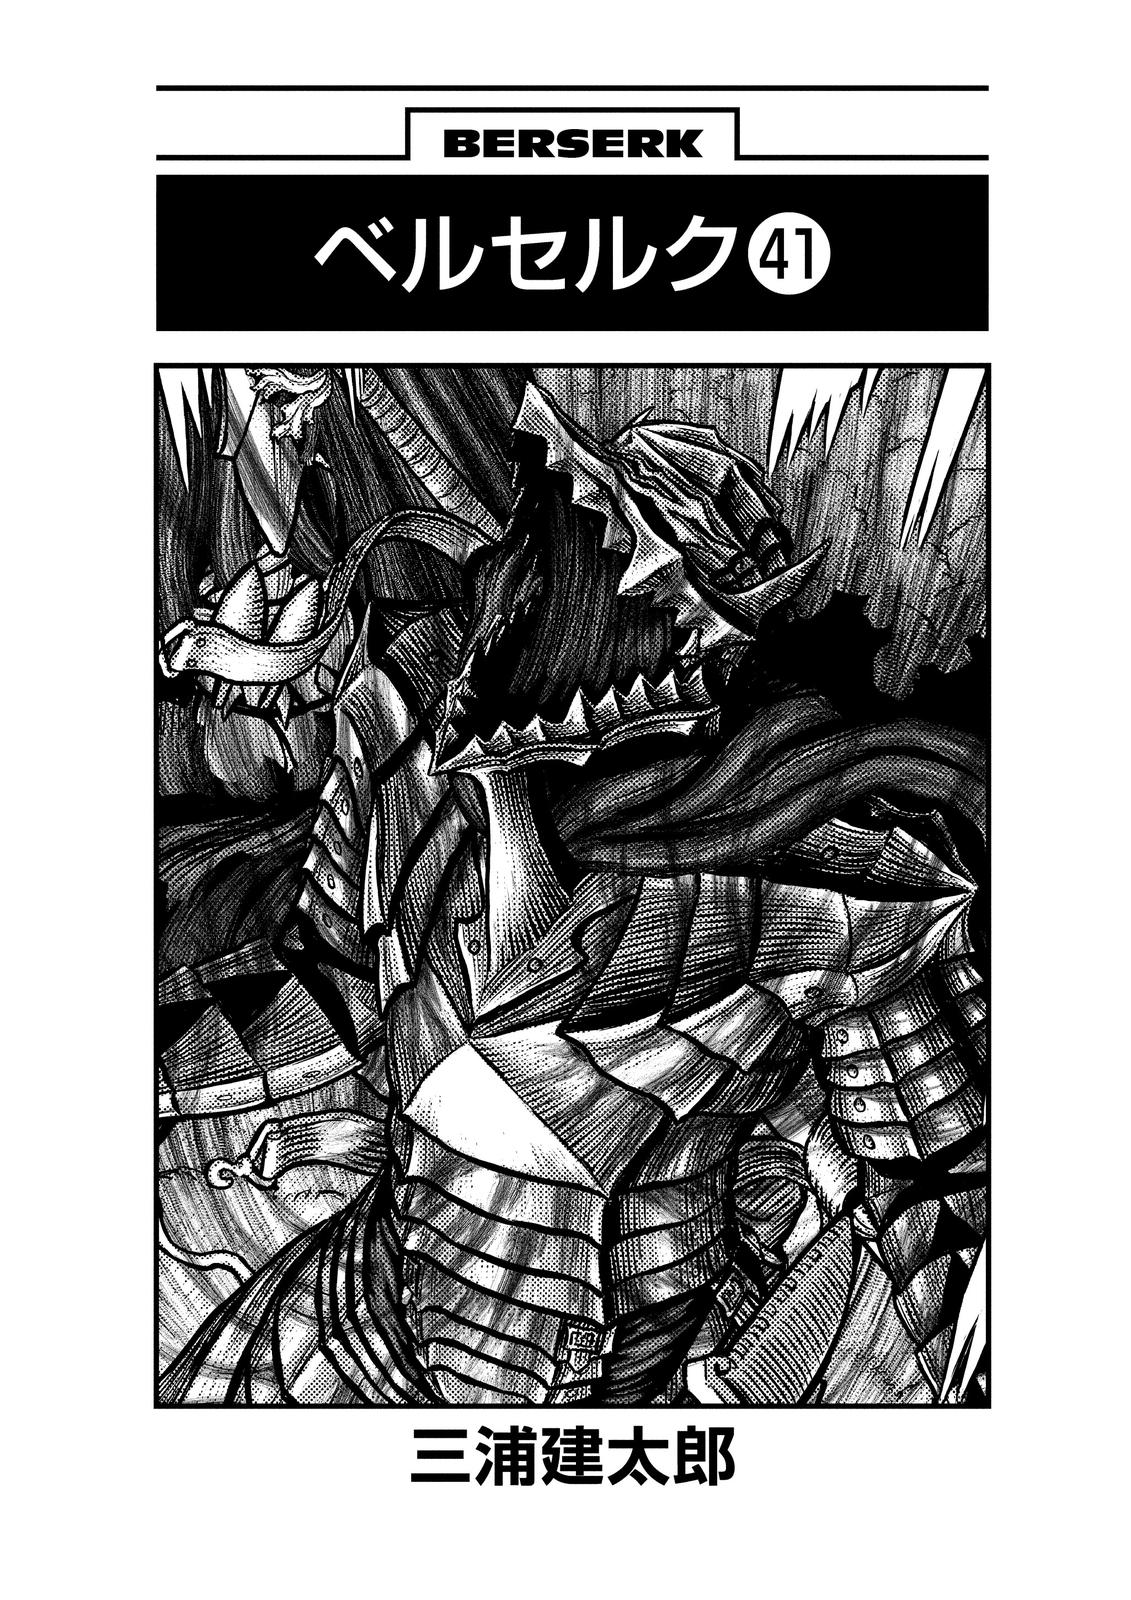 Berserk Manga Chapter 358 image 04